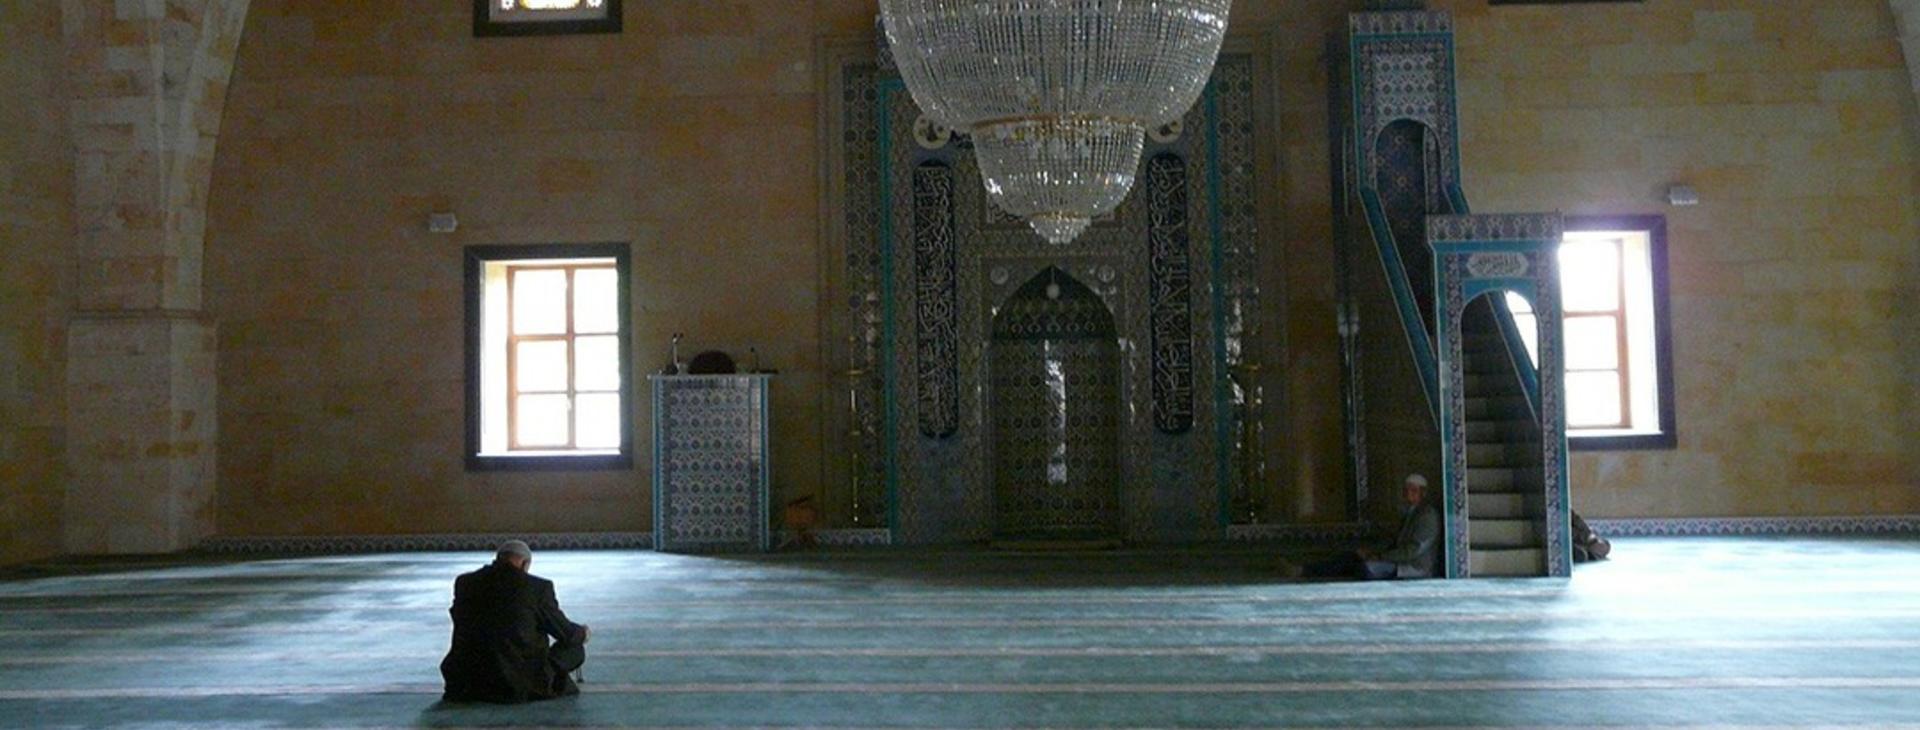 Turkey Man in Masjid